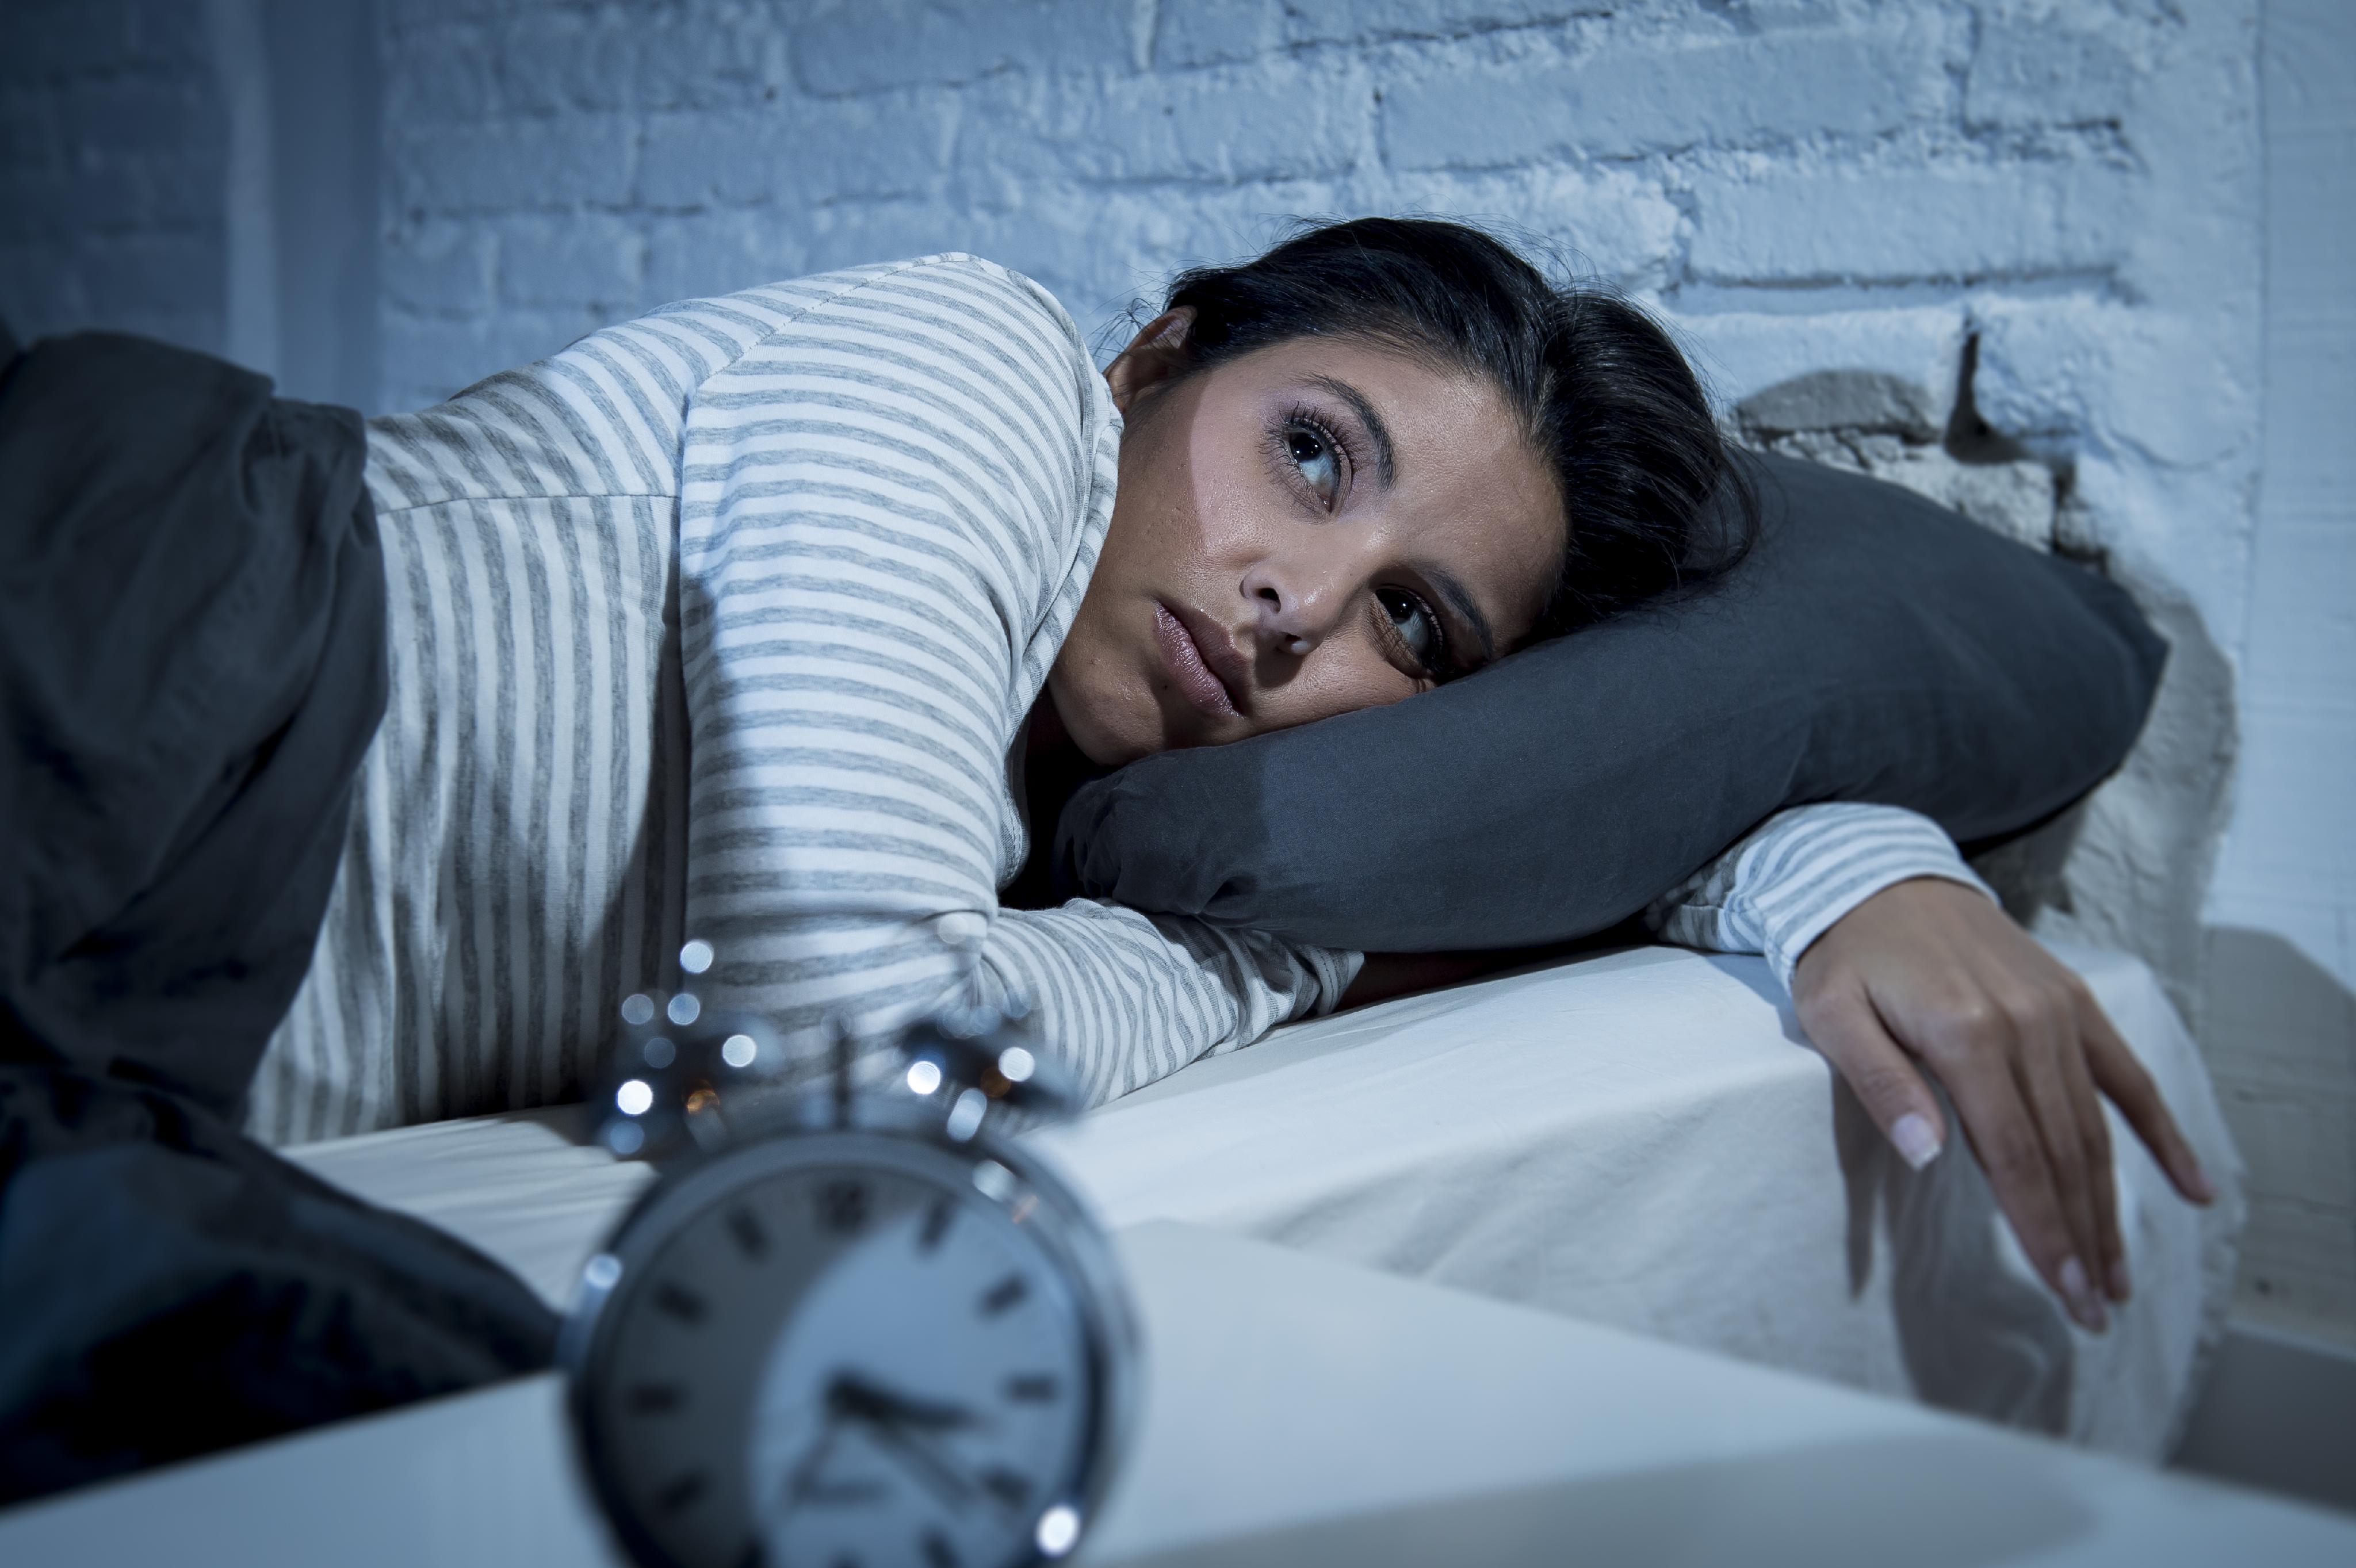 causes of insomnia essay